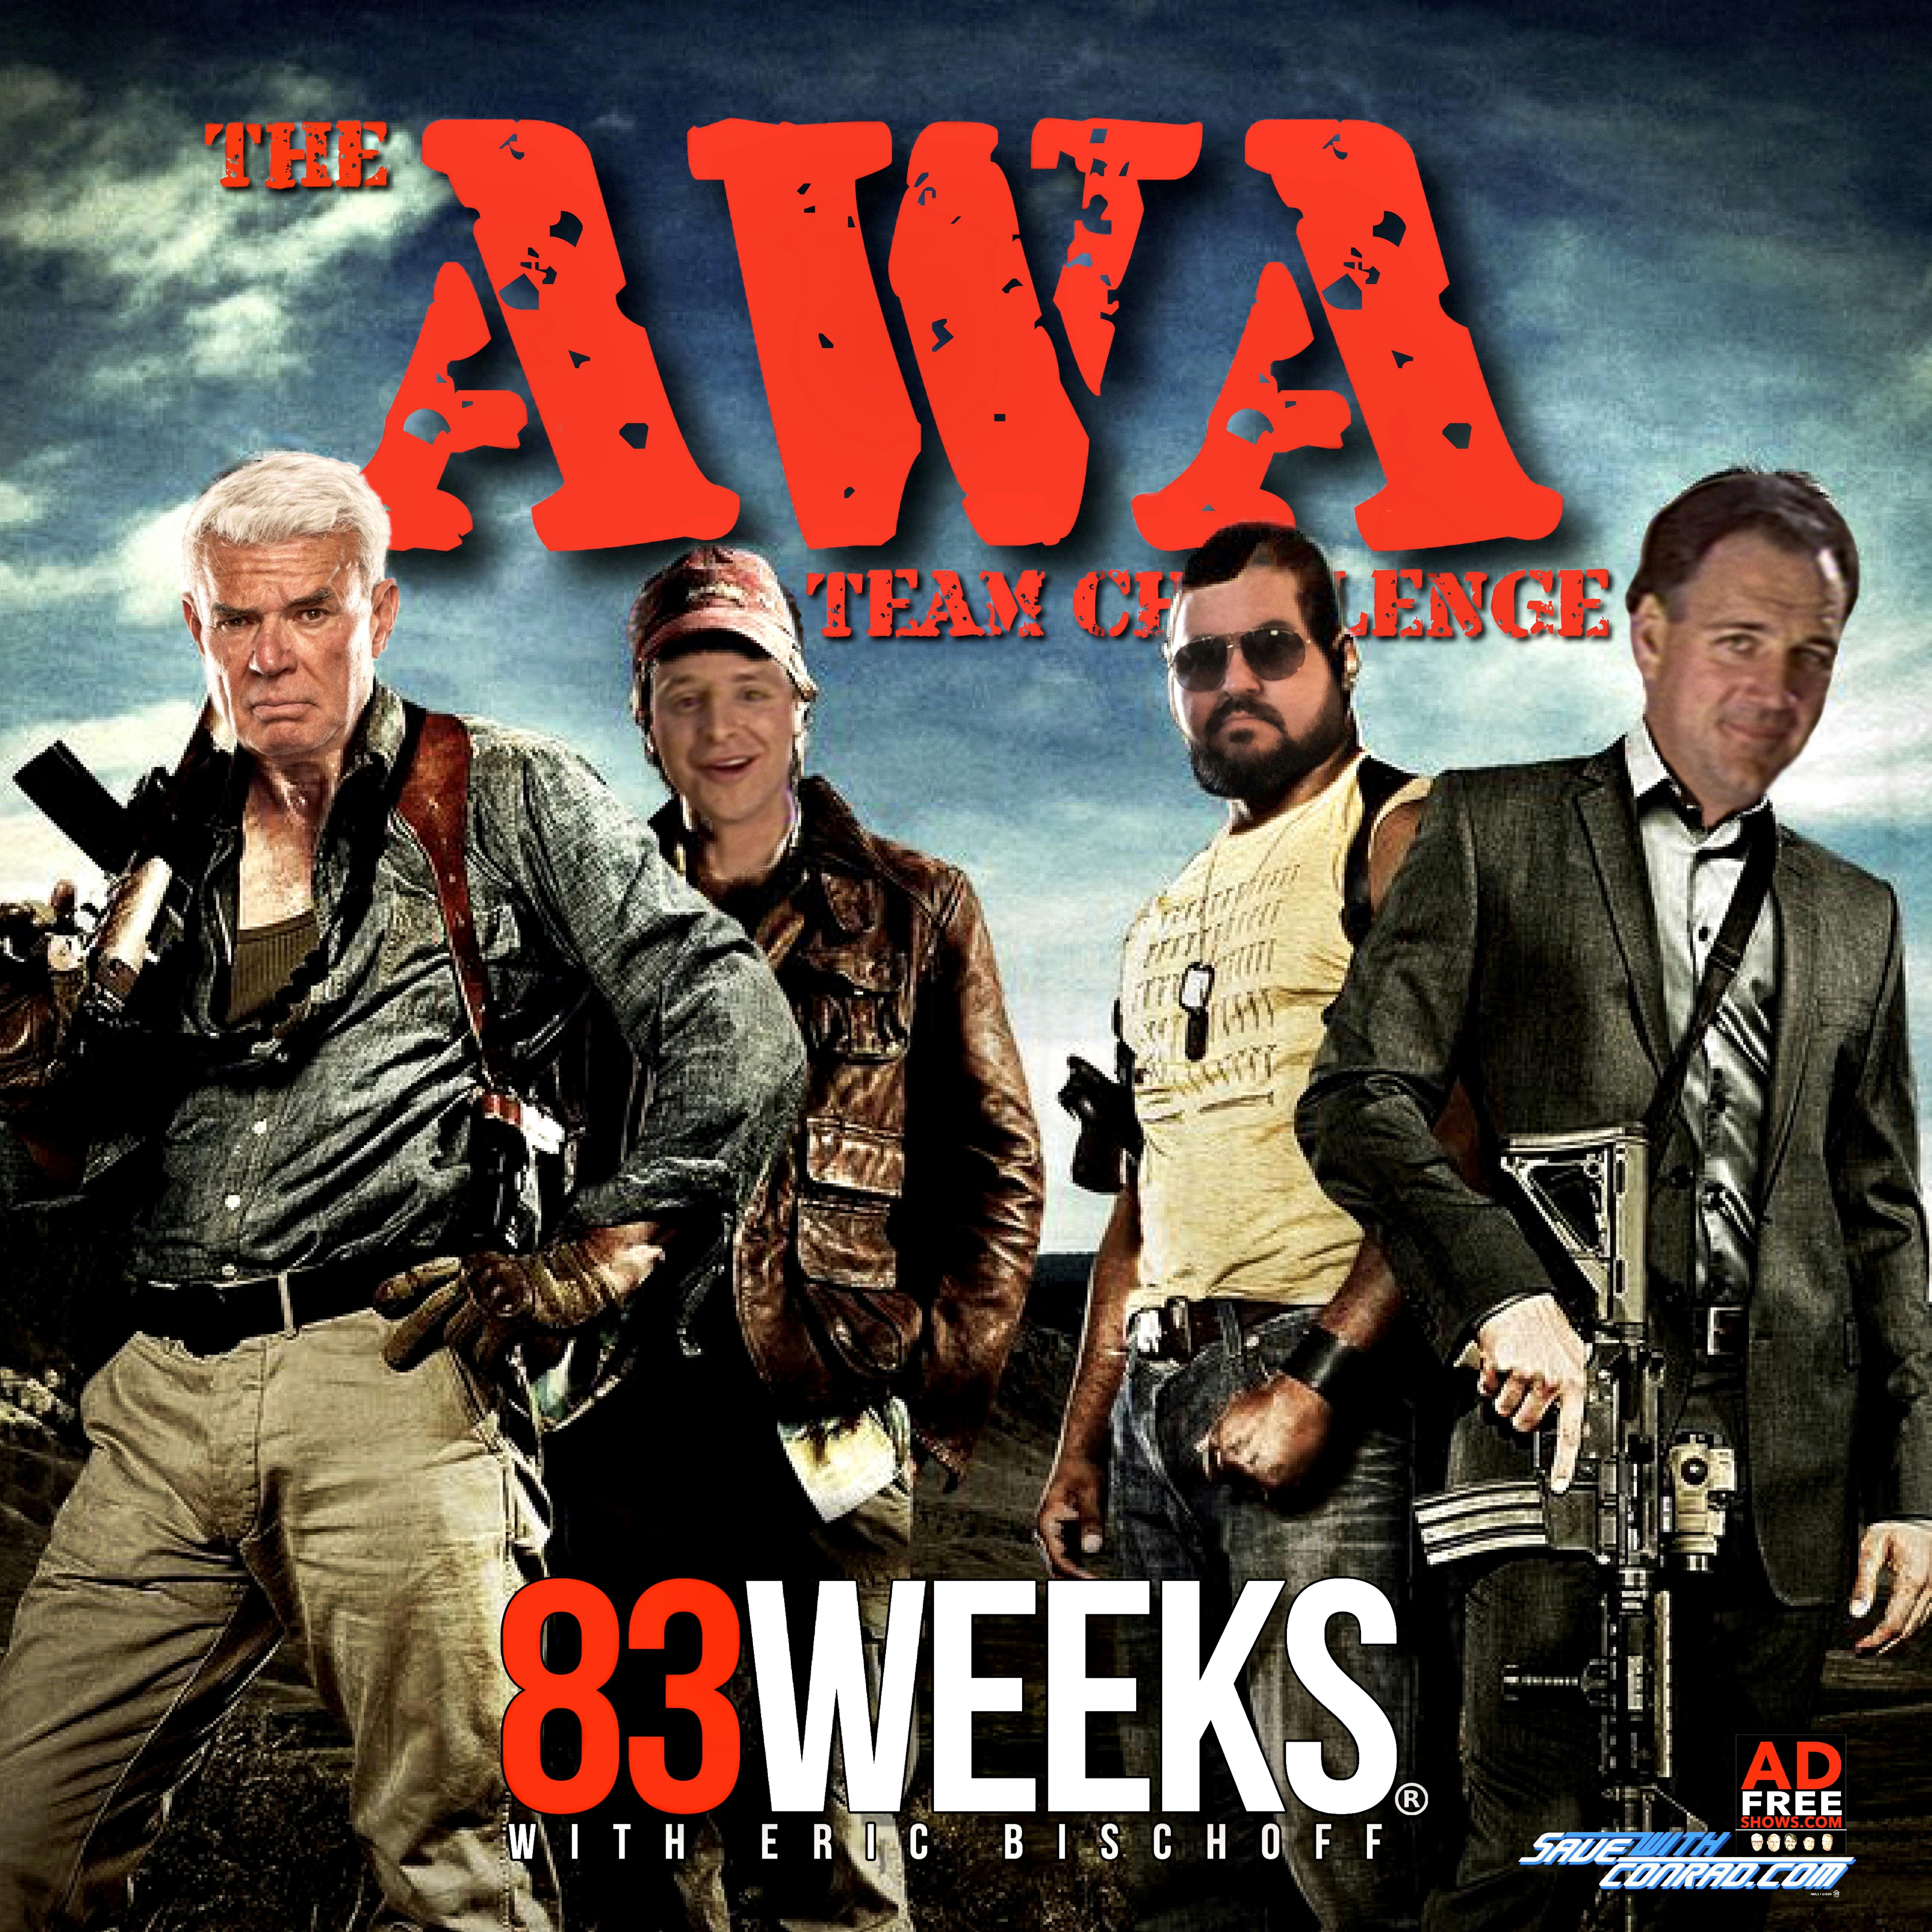 Episode 130: AWA Team Challenge